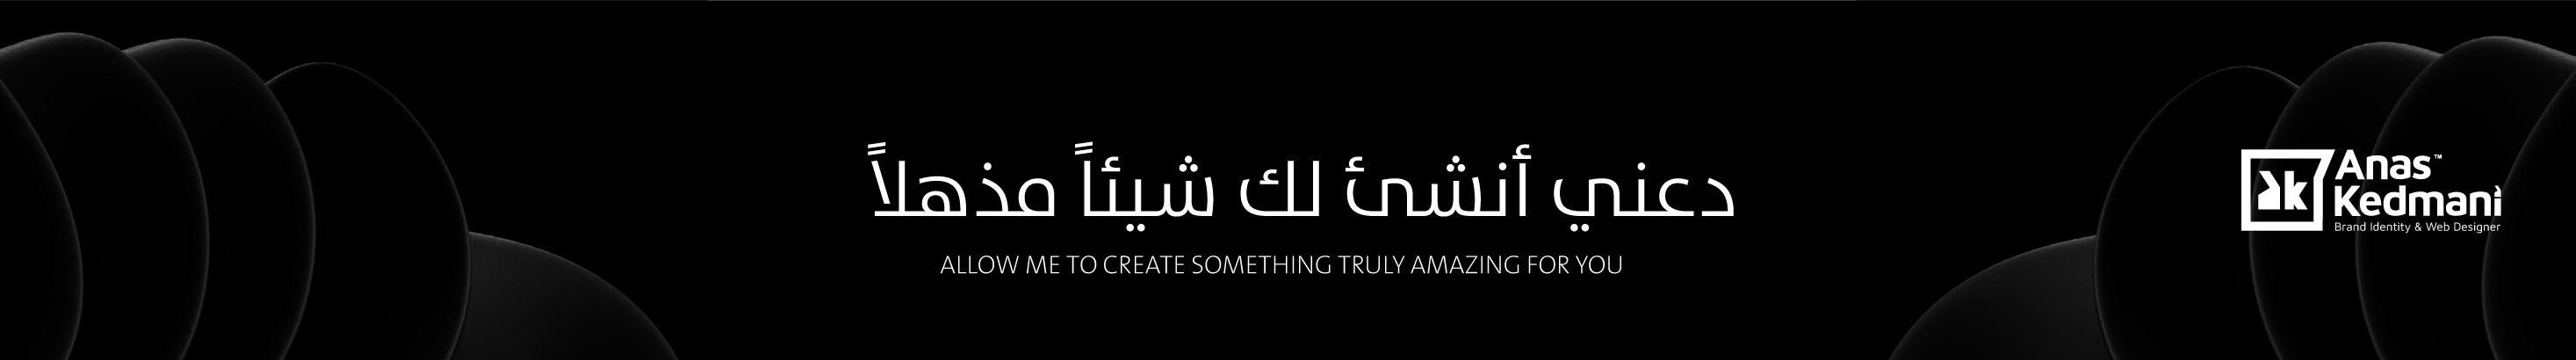 Profil-Banner von Anas Kedmani ™